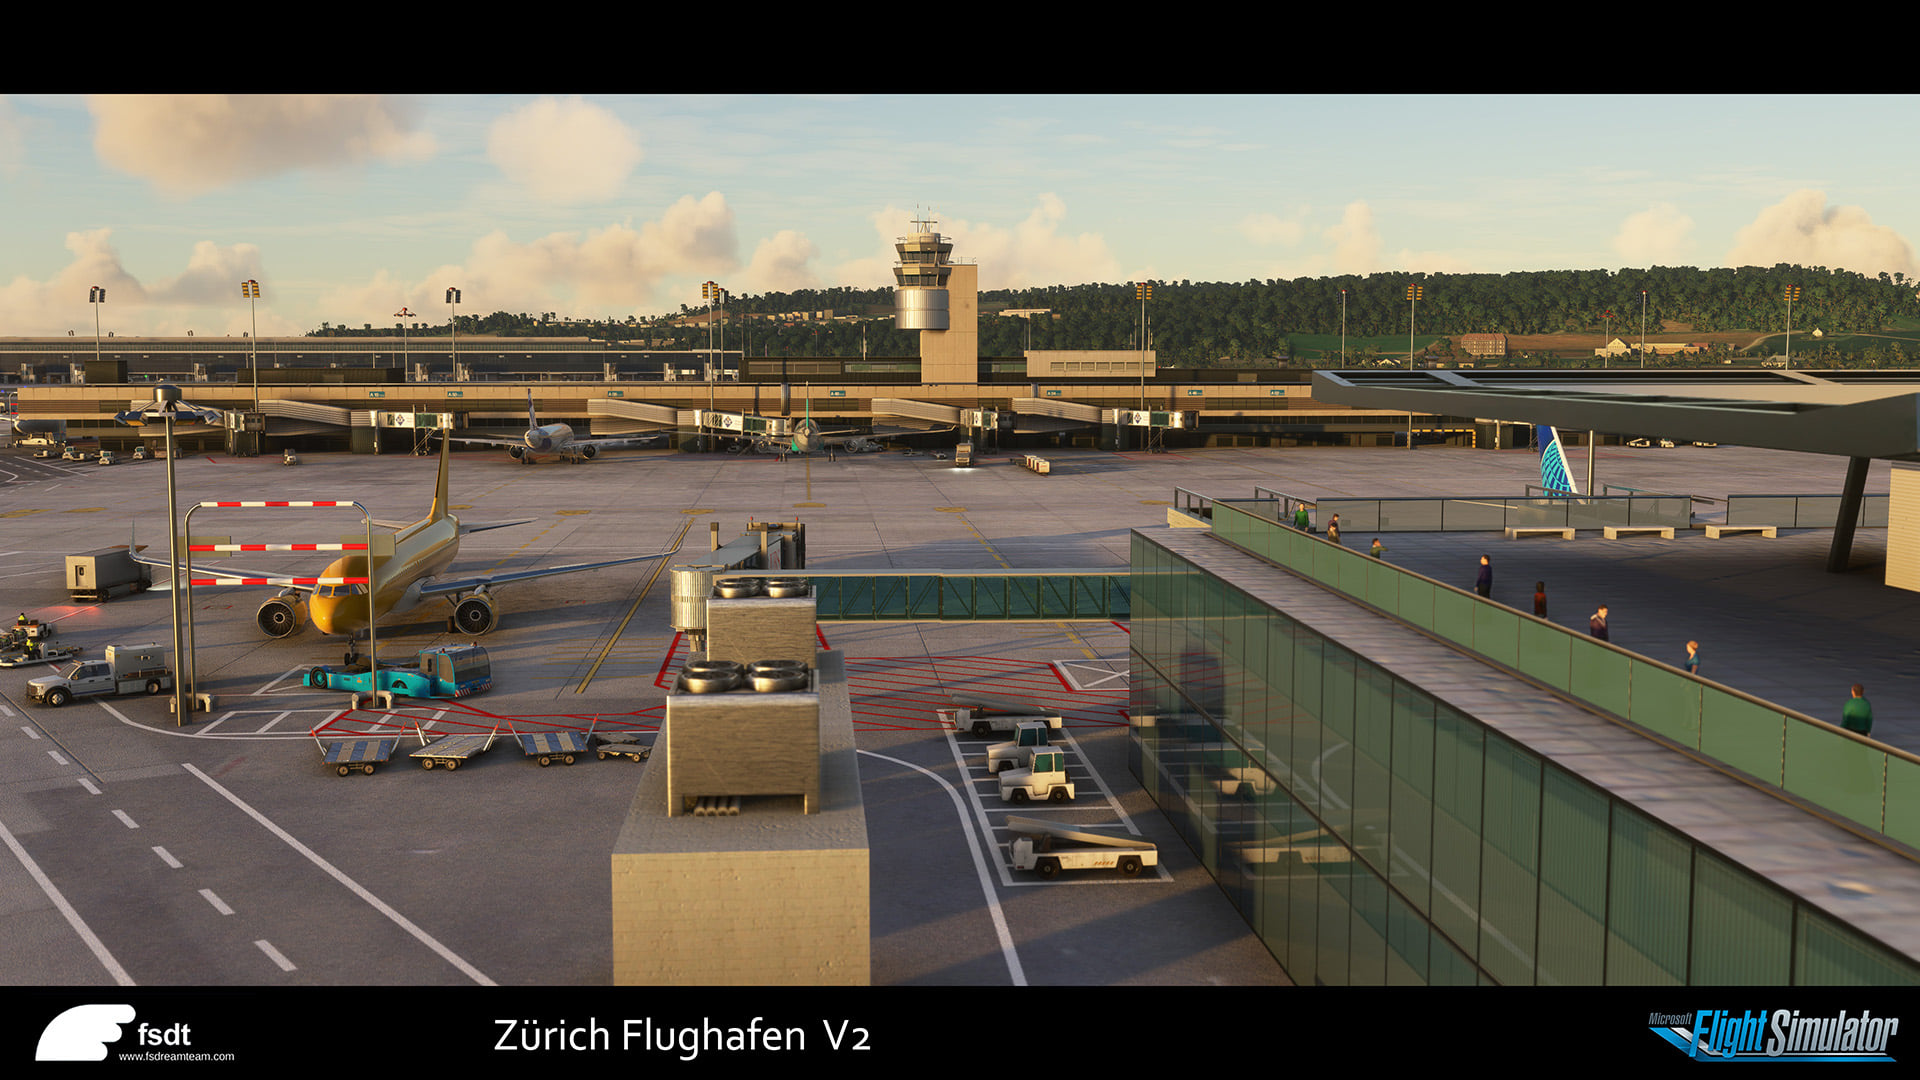 Zurich airport msfs 5